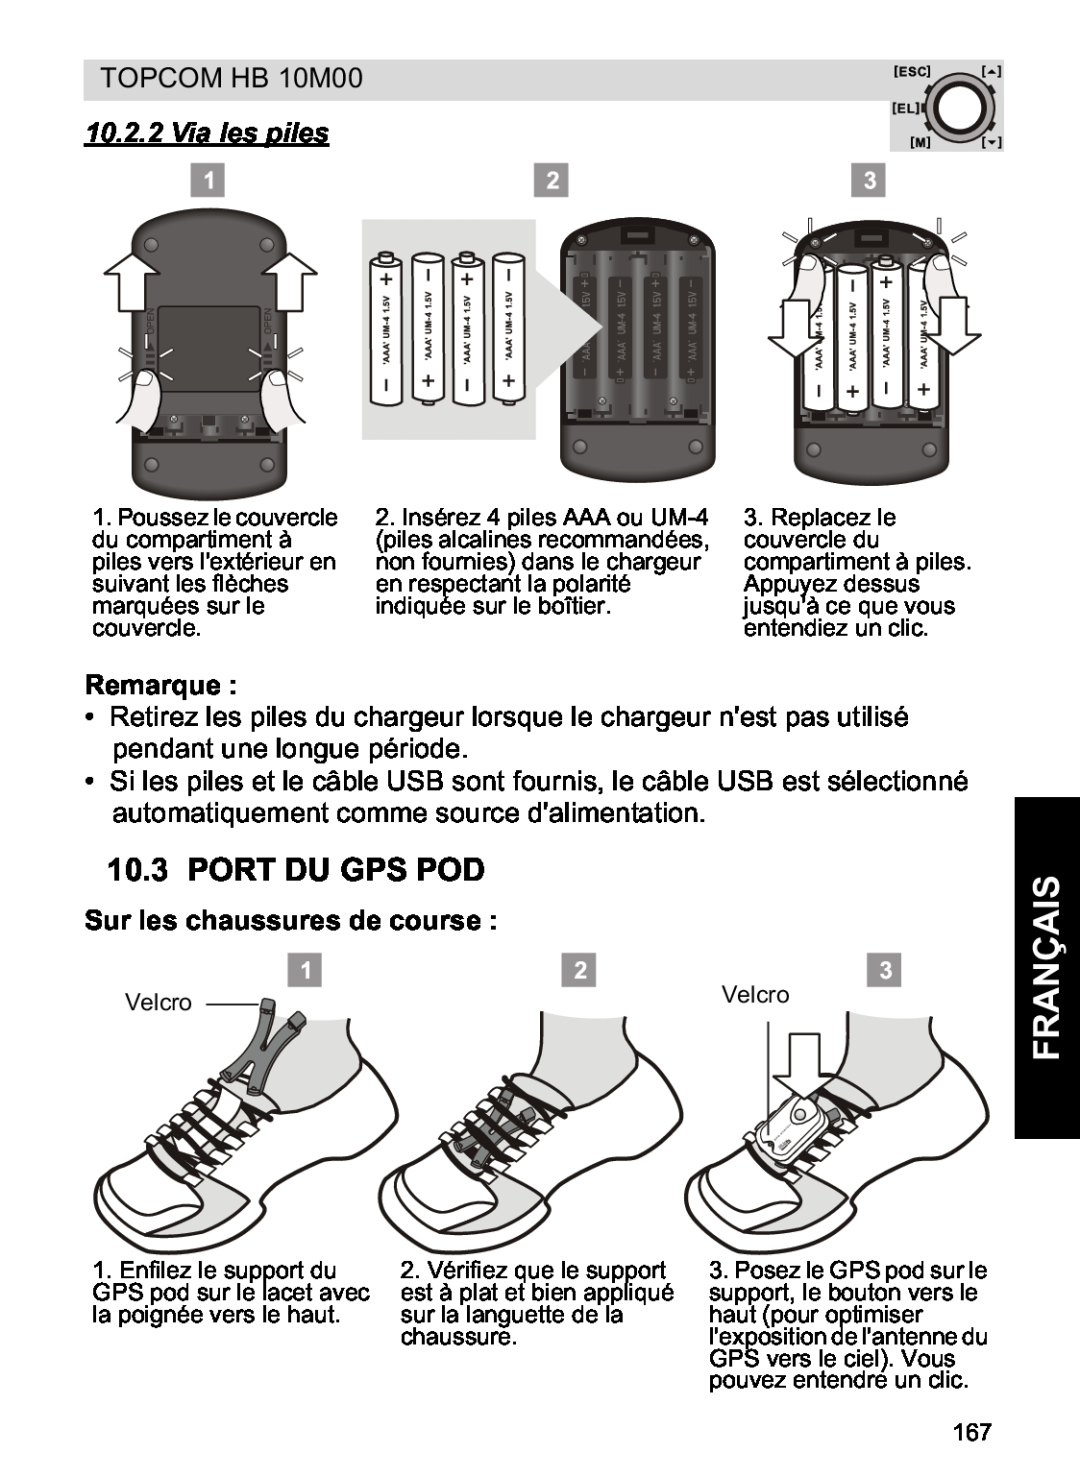 Topcom HB 10M00 manual Port Du Gps Pod, Via les piles, Sur les chaussures de course, Français, Remarque 